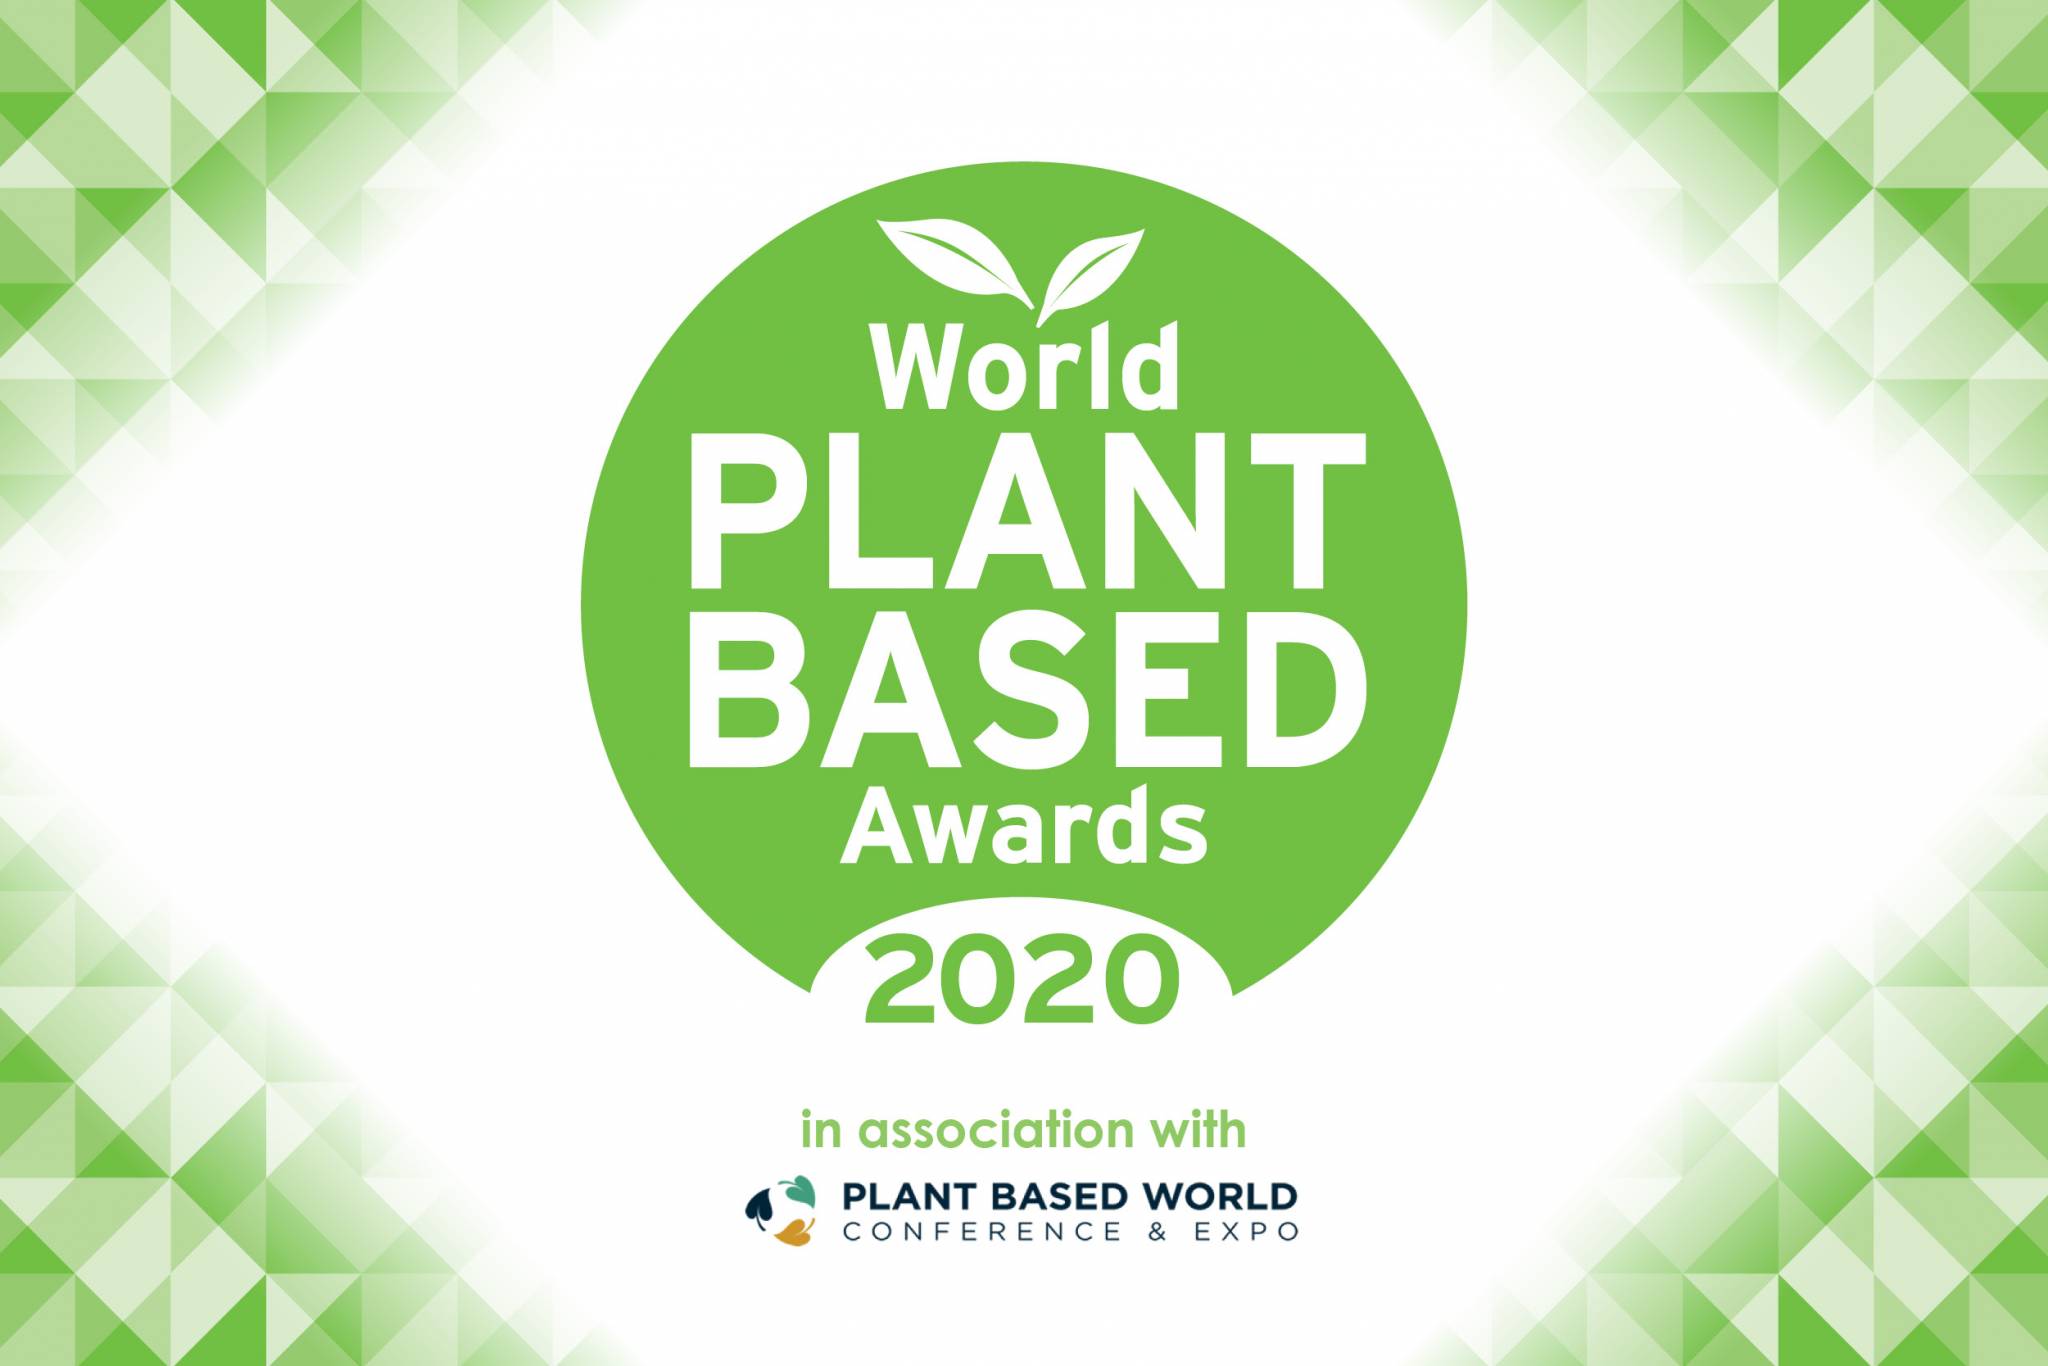 World Plant-Based Awards 2020 winners revealed!